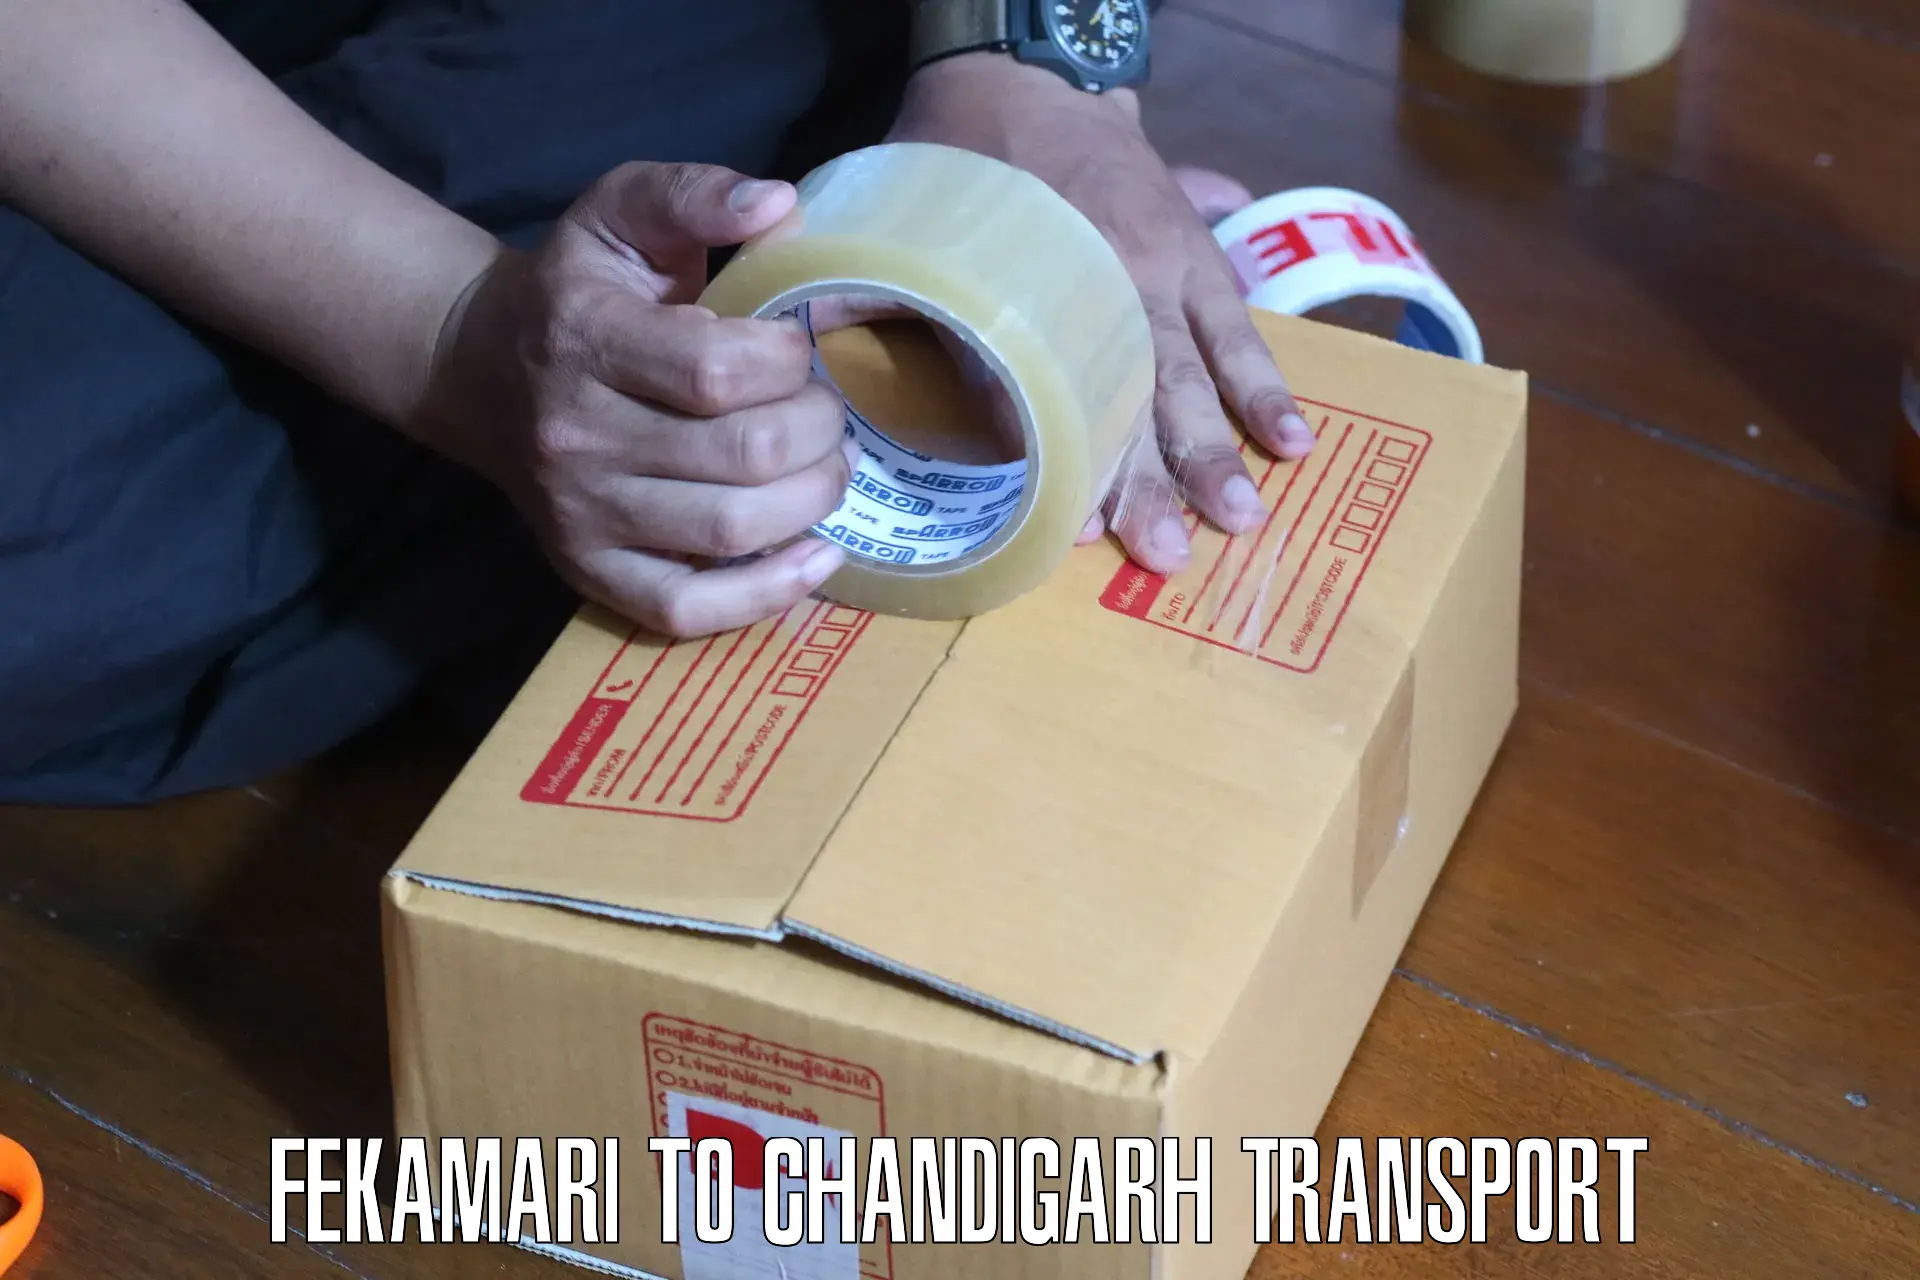 Bike transport service Fekamari to Chandigarh